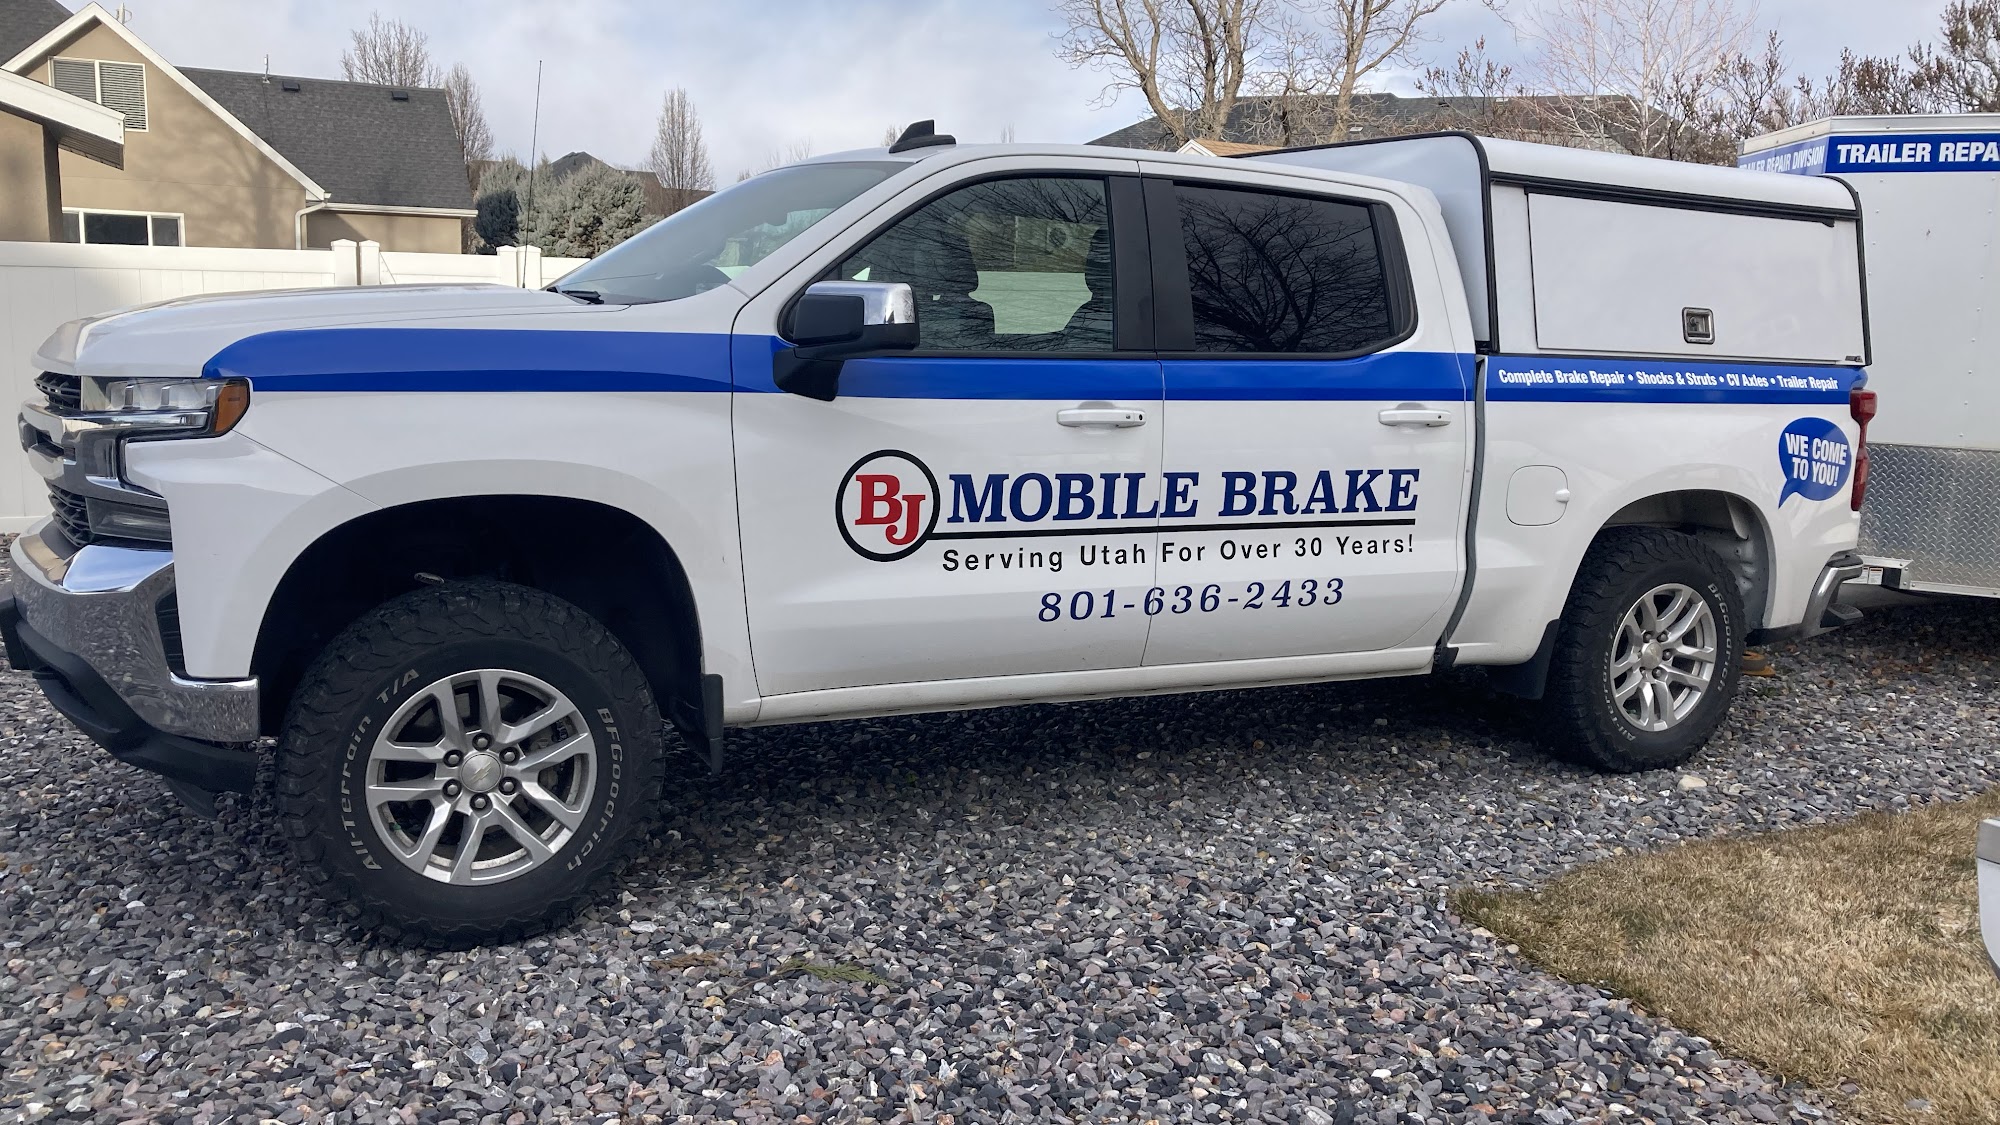 BJ Mobile Brake Inc